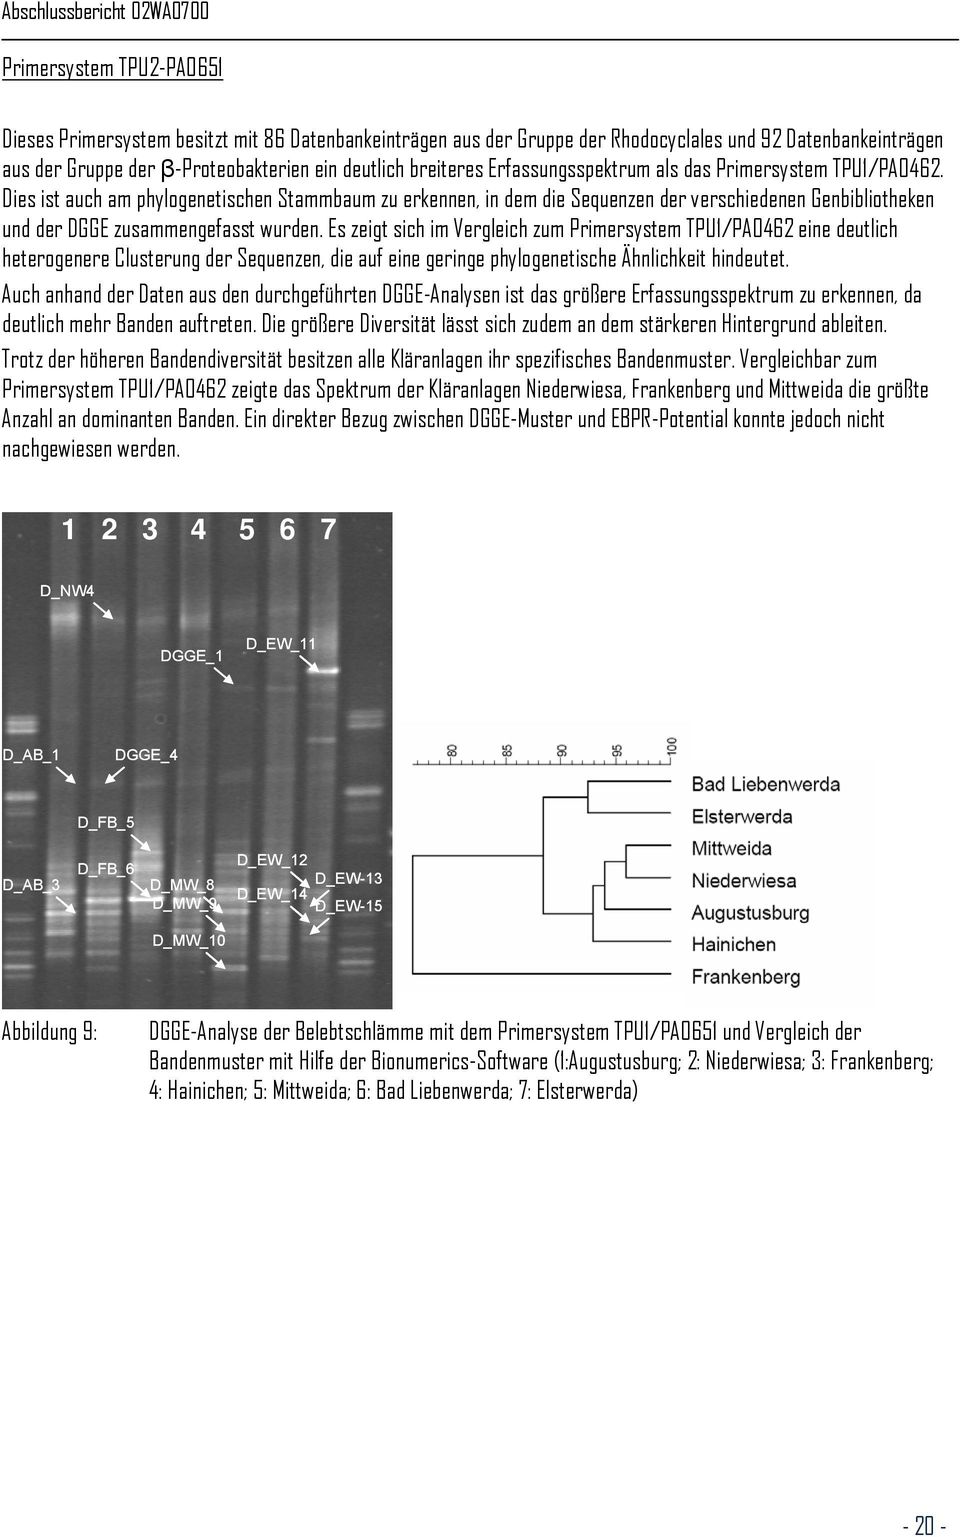 Dies ist auch am phylogenetischen Stammbaum zu erkennen, in dem die Sequenzen der verschiedenen Genbibliotheken und der DGGE zusammengefasst wurden.